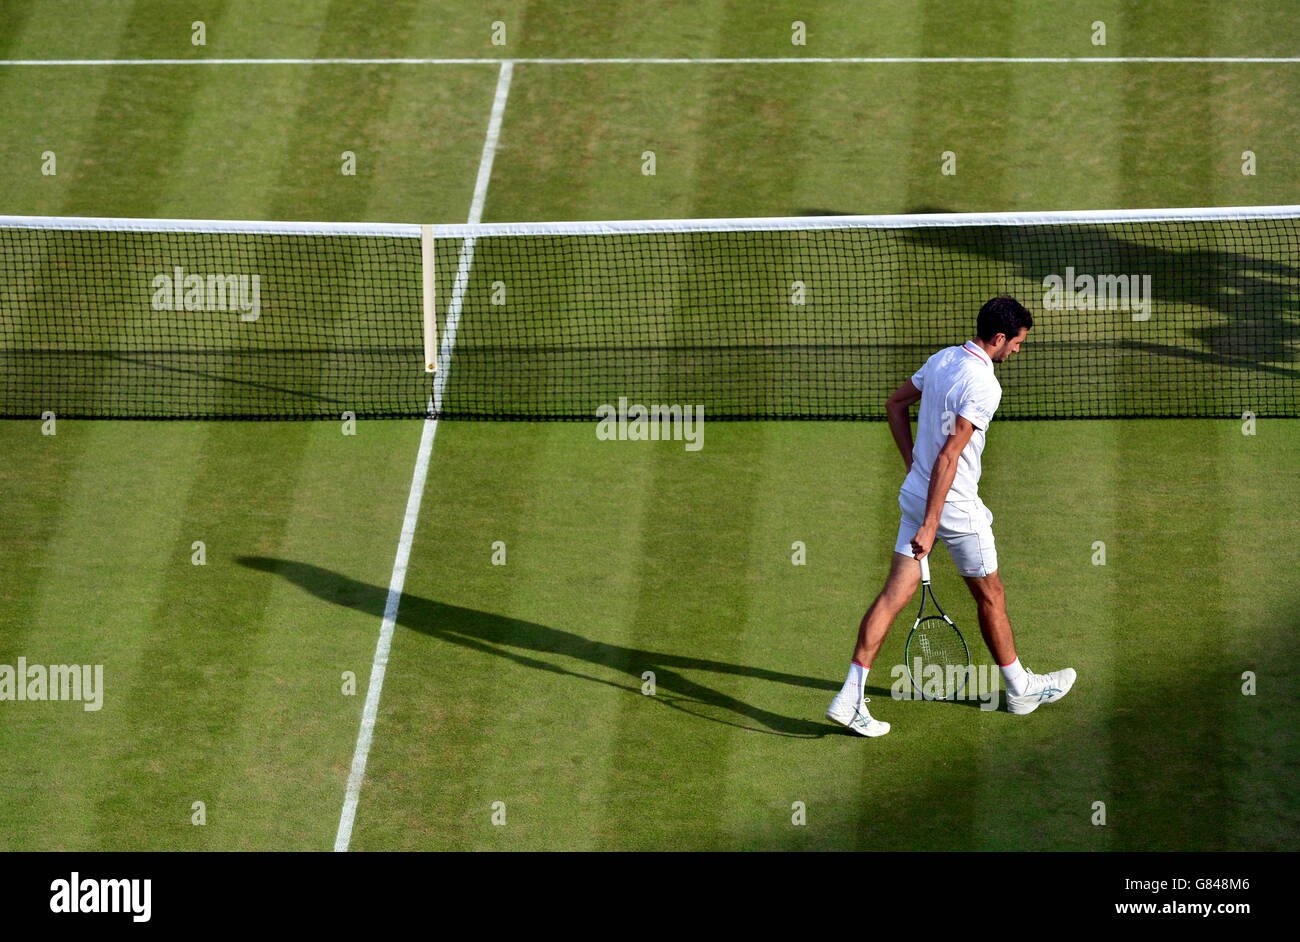 James ward fällt seinen Aufschlag gegen Vasek Pospisil während des sechsten Tages der Wimbledon Championships beim All England Lawn Tennis und Croquet Club, Wimbledon. Stockfoto